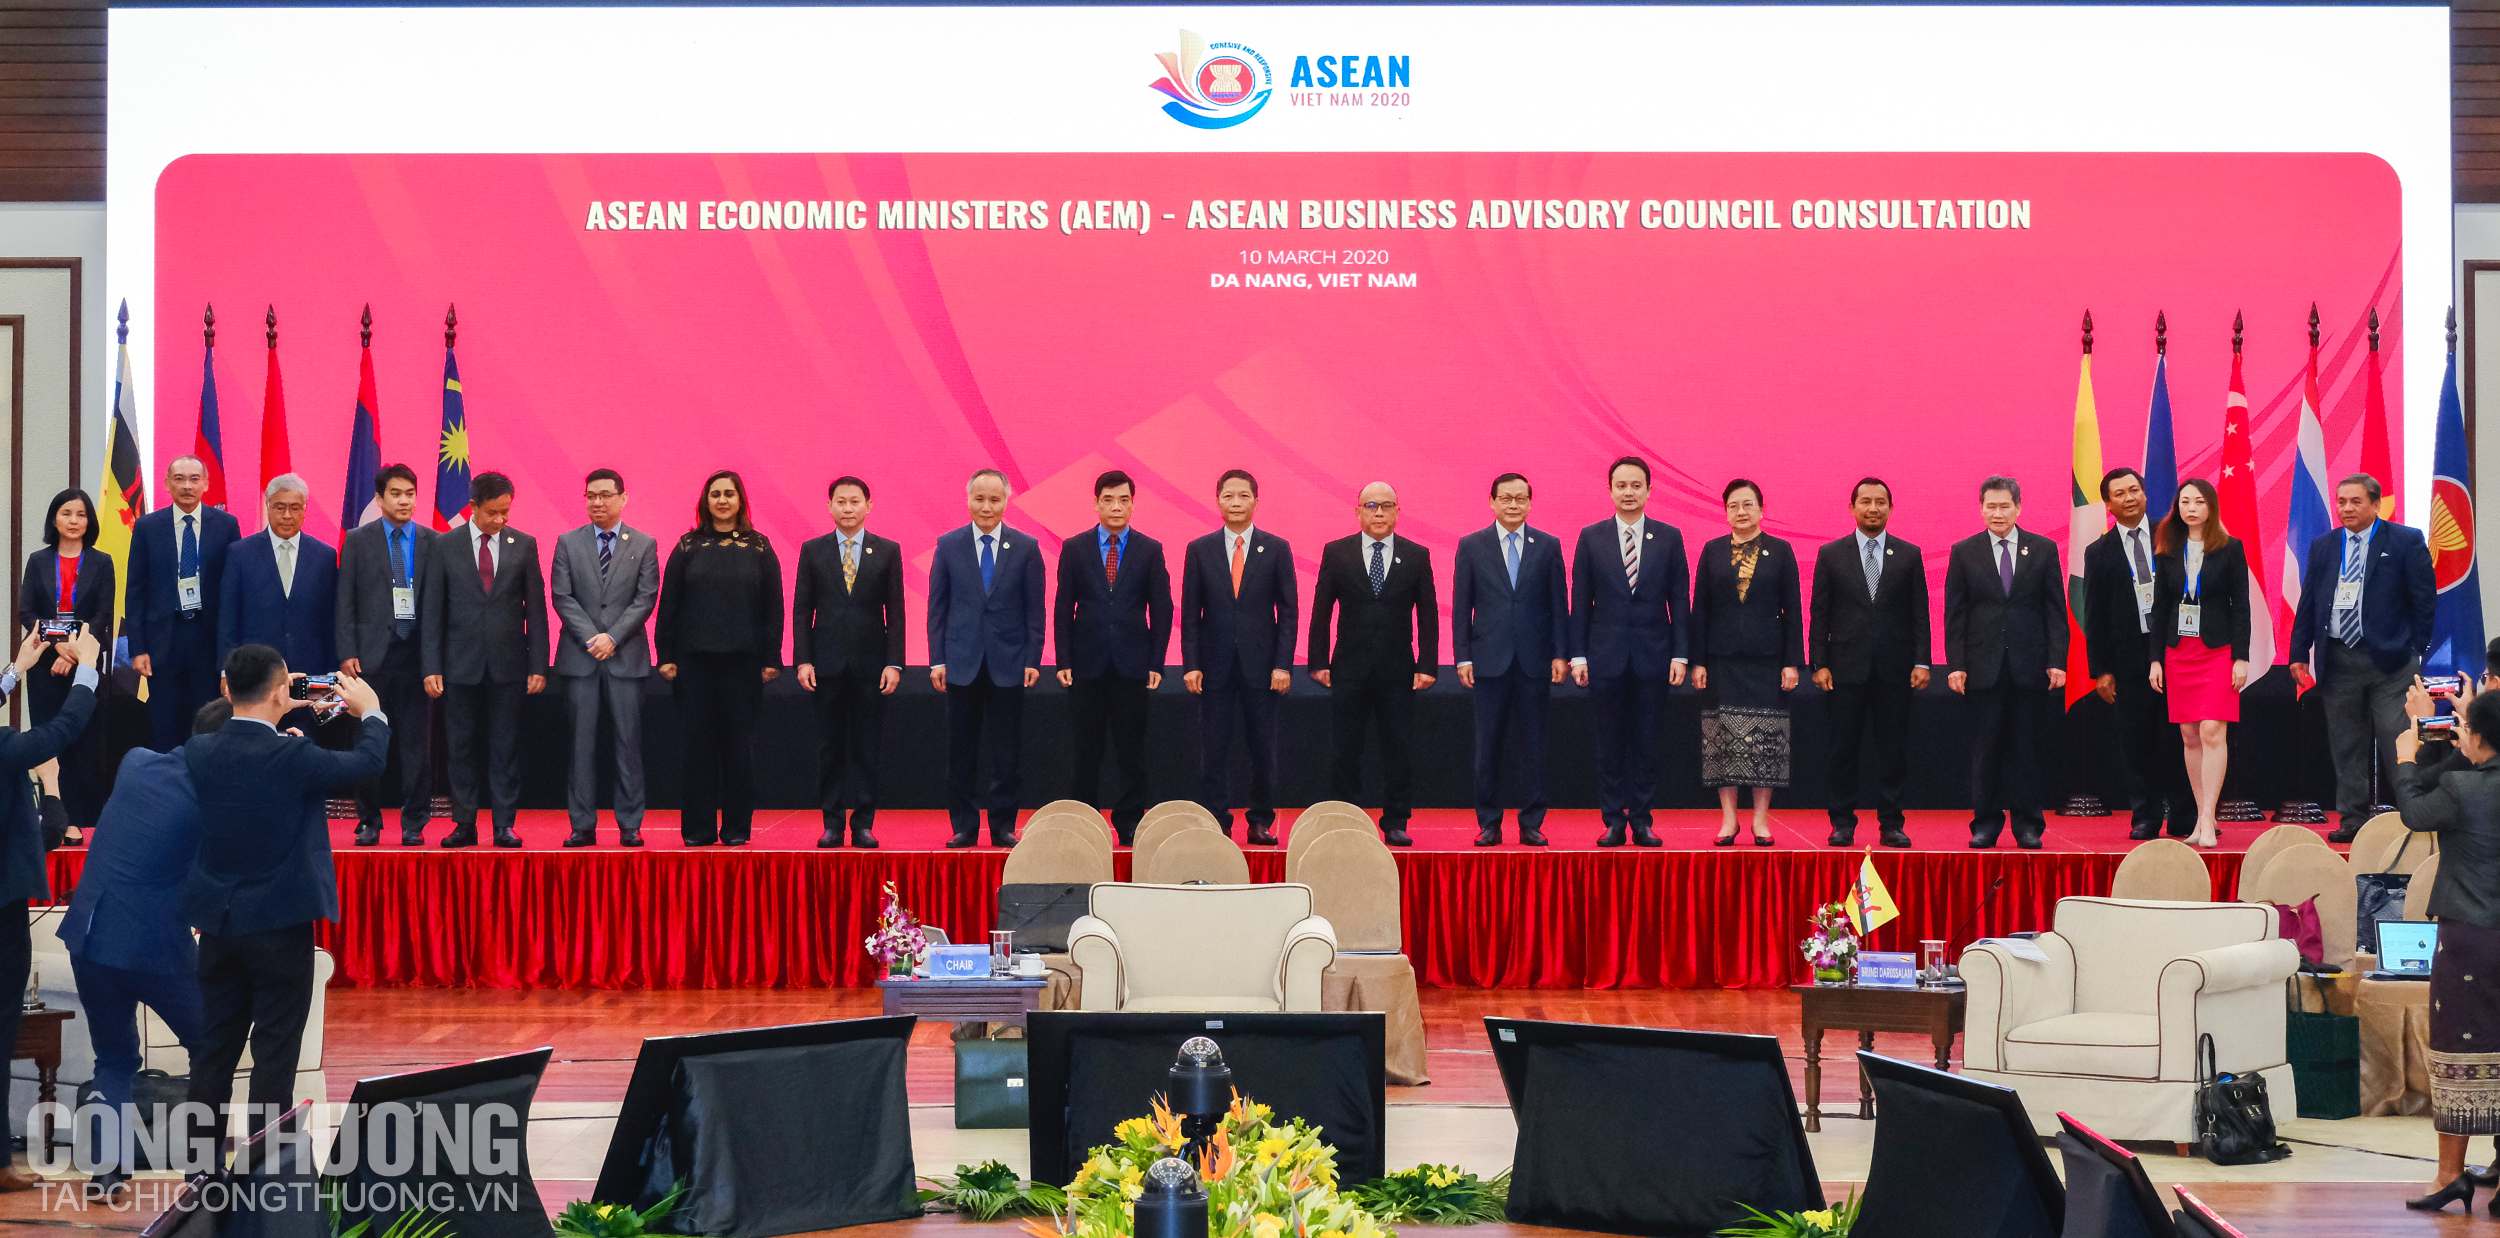 Đại diện các nước tại Hội nghị Bộ trưởng Kinh tế ASEAN hẹp lần thứ 26 (AEM 26)